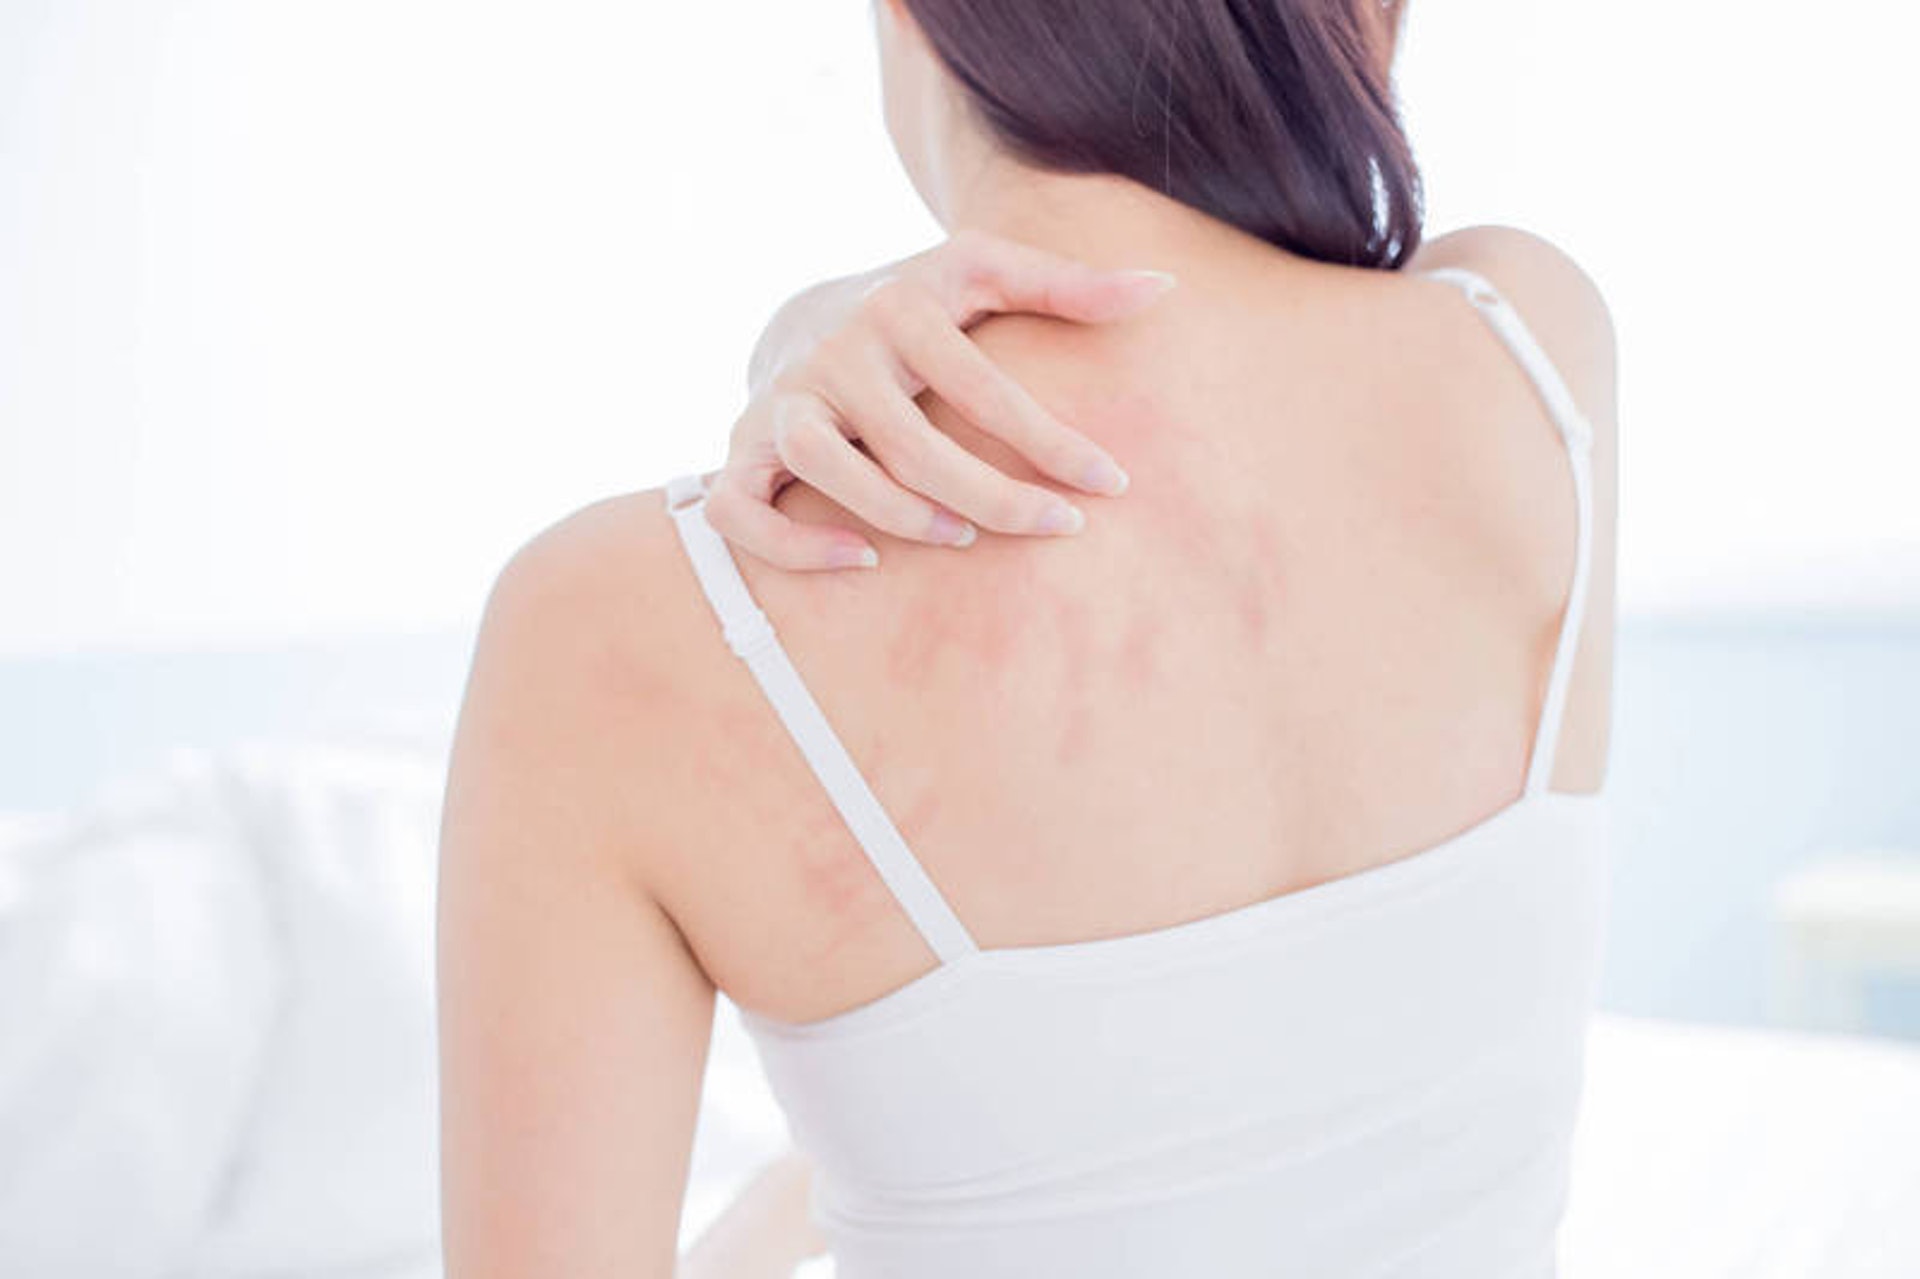 天灸藥貼須敷貼在患者皮膚表面，因此當皮膚有破損或皮膚處於較敏感狀態時，便不適宜做天灸，這一點濕疹患者須注意。（圖片：shutterstock）